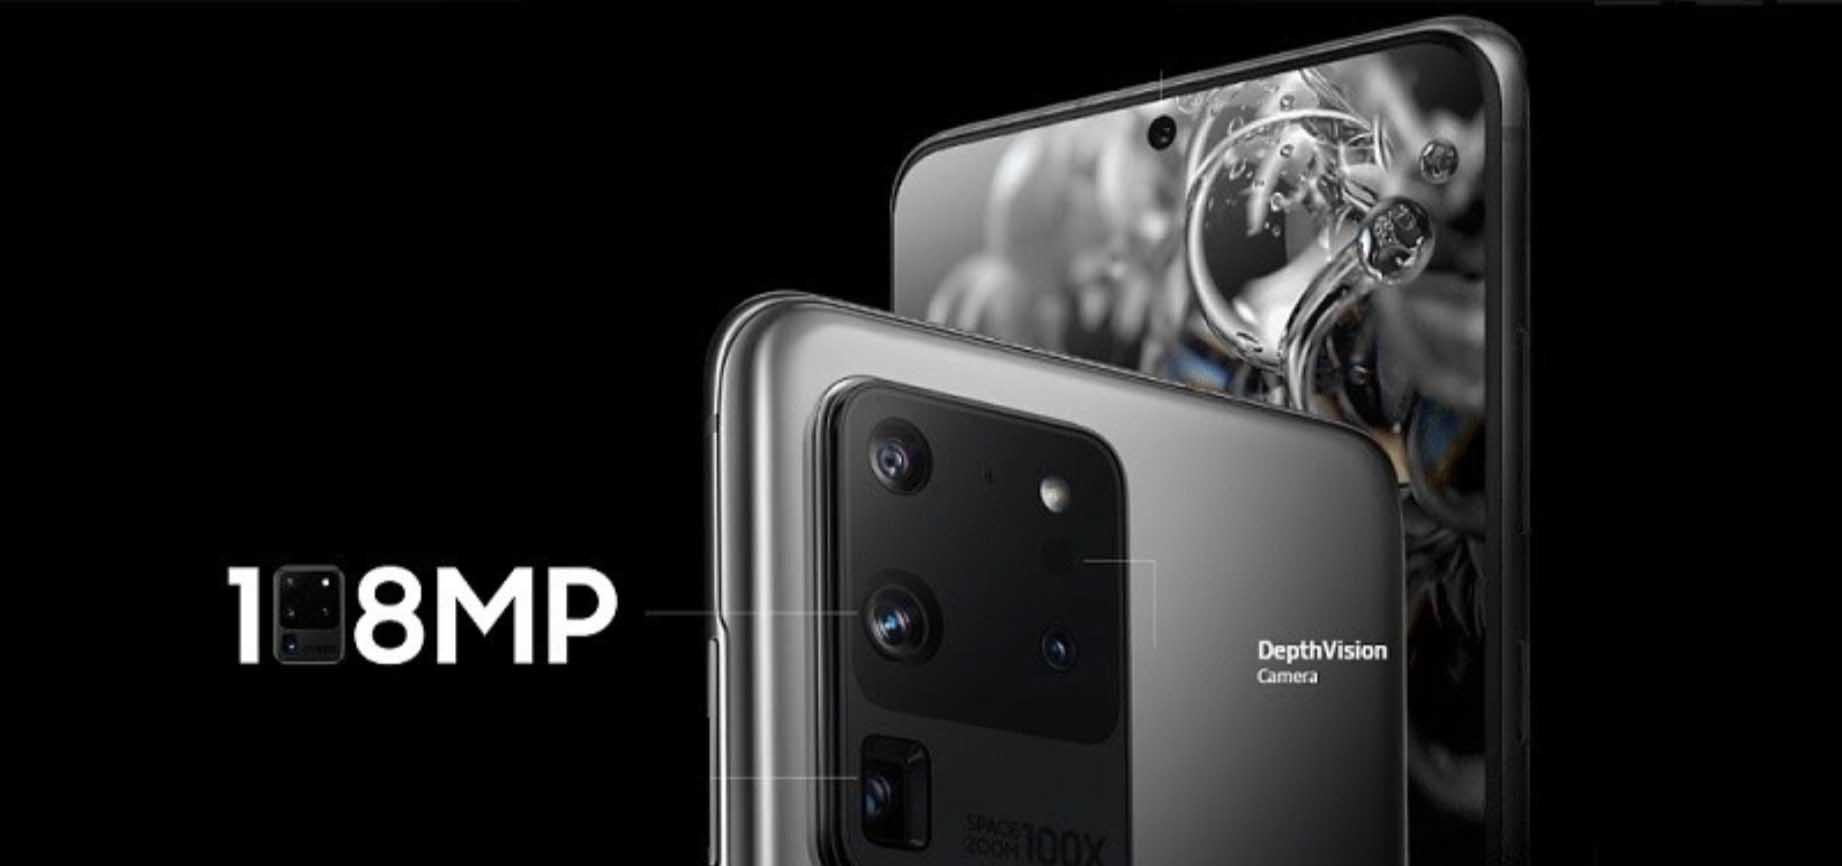 Samsung chuẩn bị ra mắt smartphone với camera 200MP cực khủng, người dùng có thực sự cần?